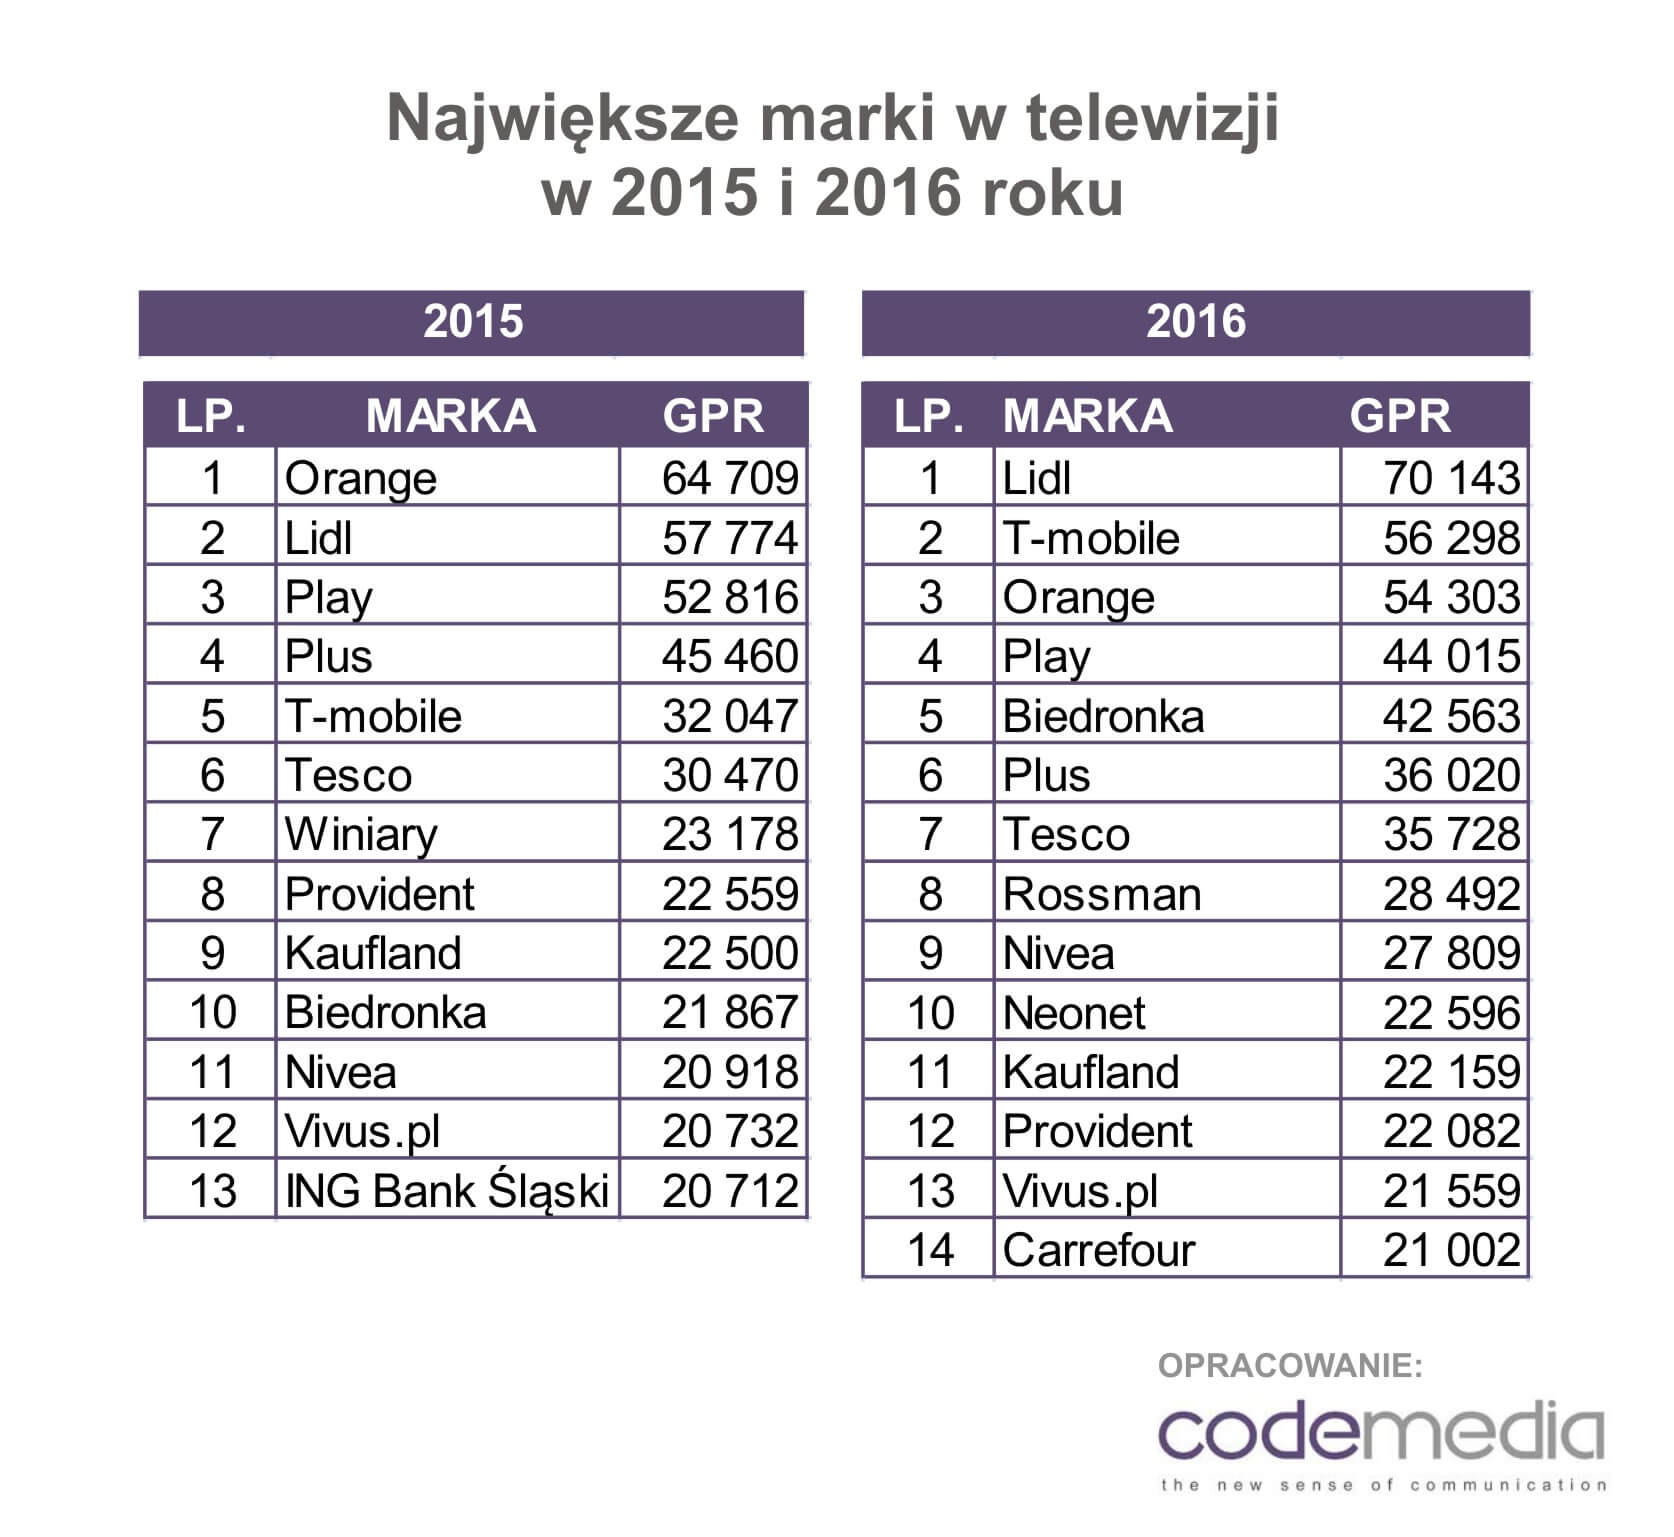 Codemedia największe marki w TV 2016